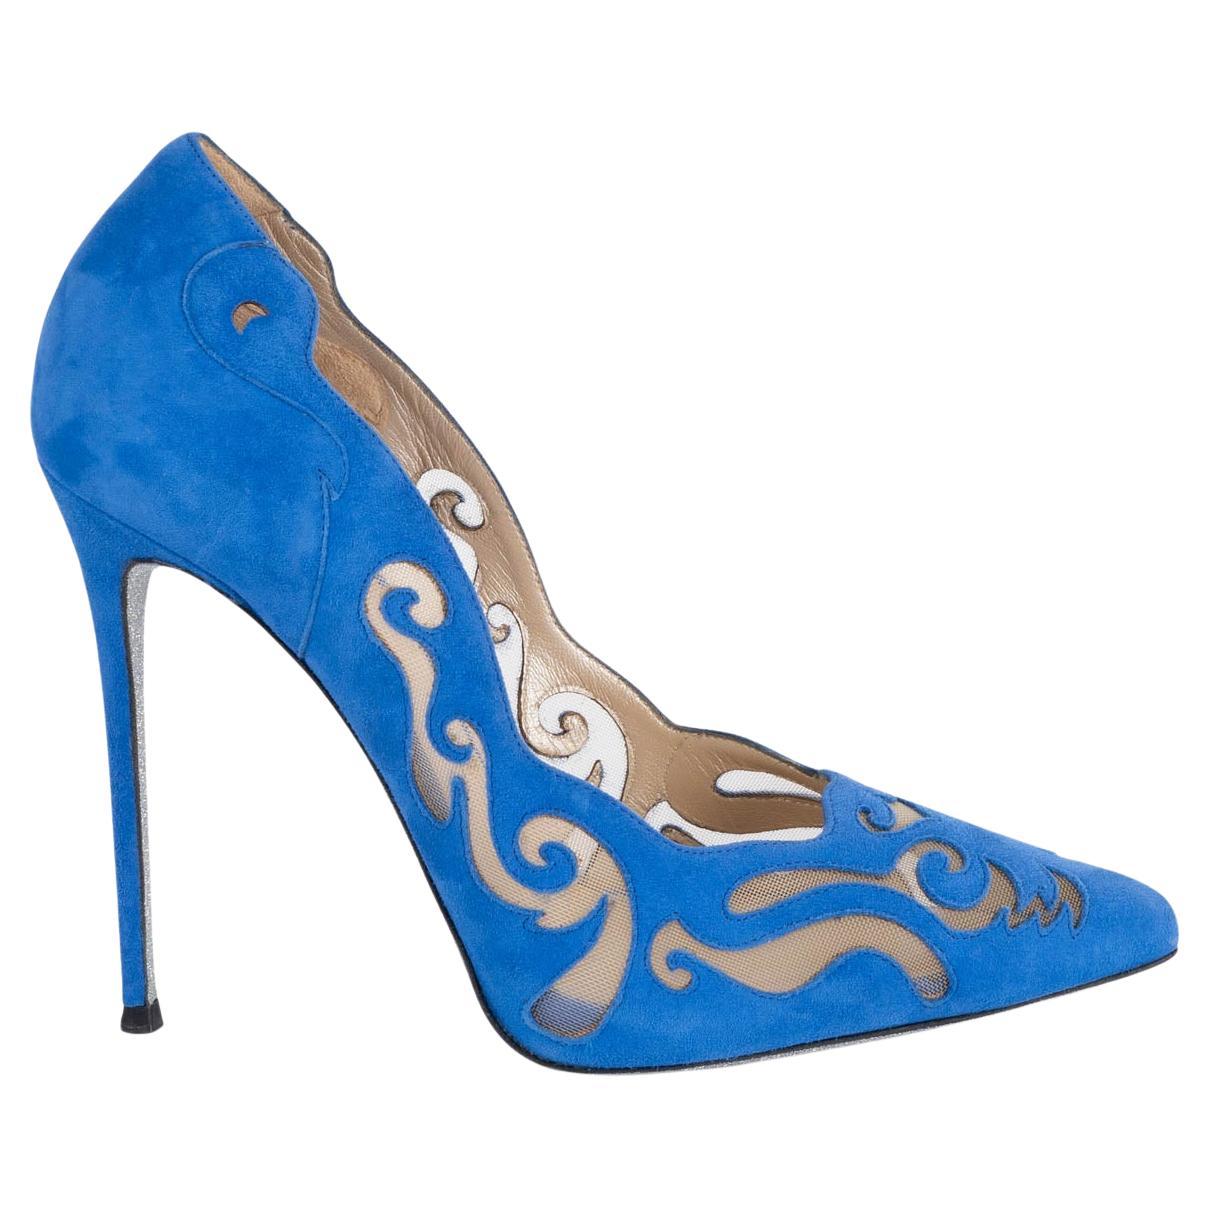 RENE CAOVILLA Chaussures à talons en daim bleu cobalt ILLUSION LASER-CUT 38,5